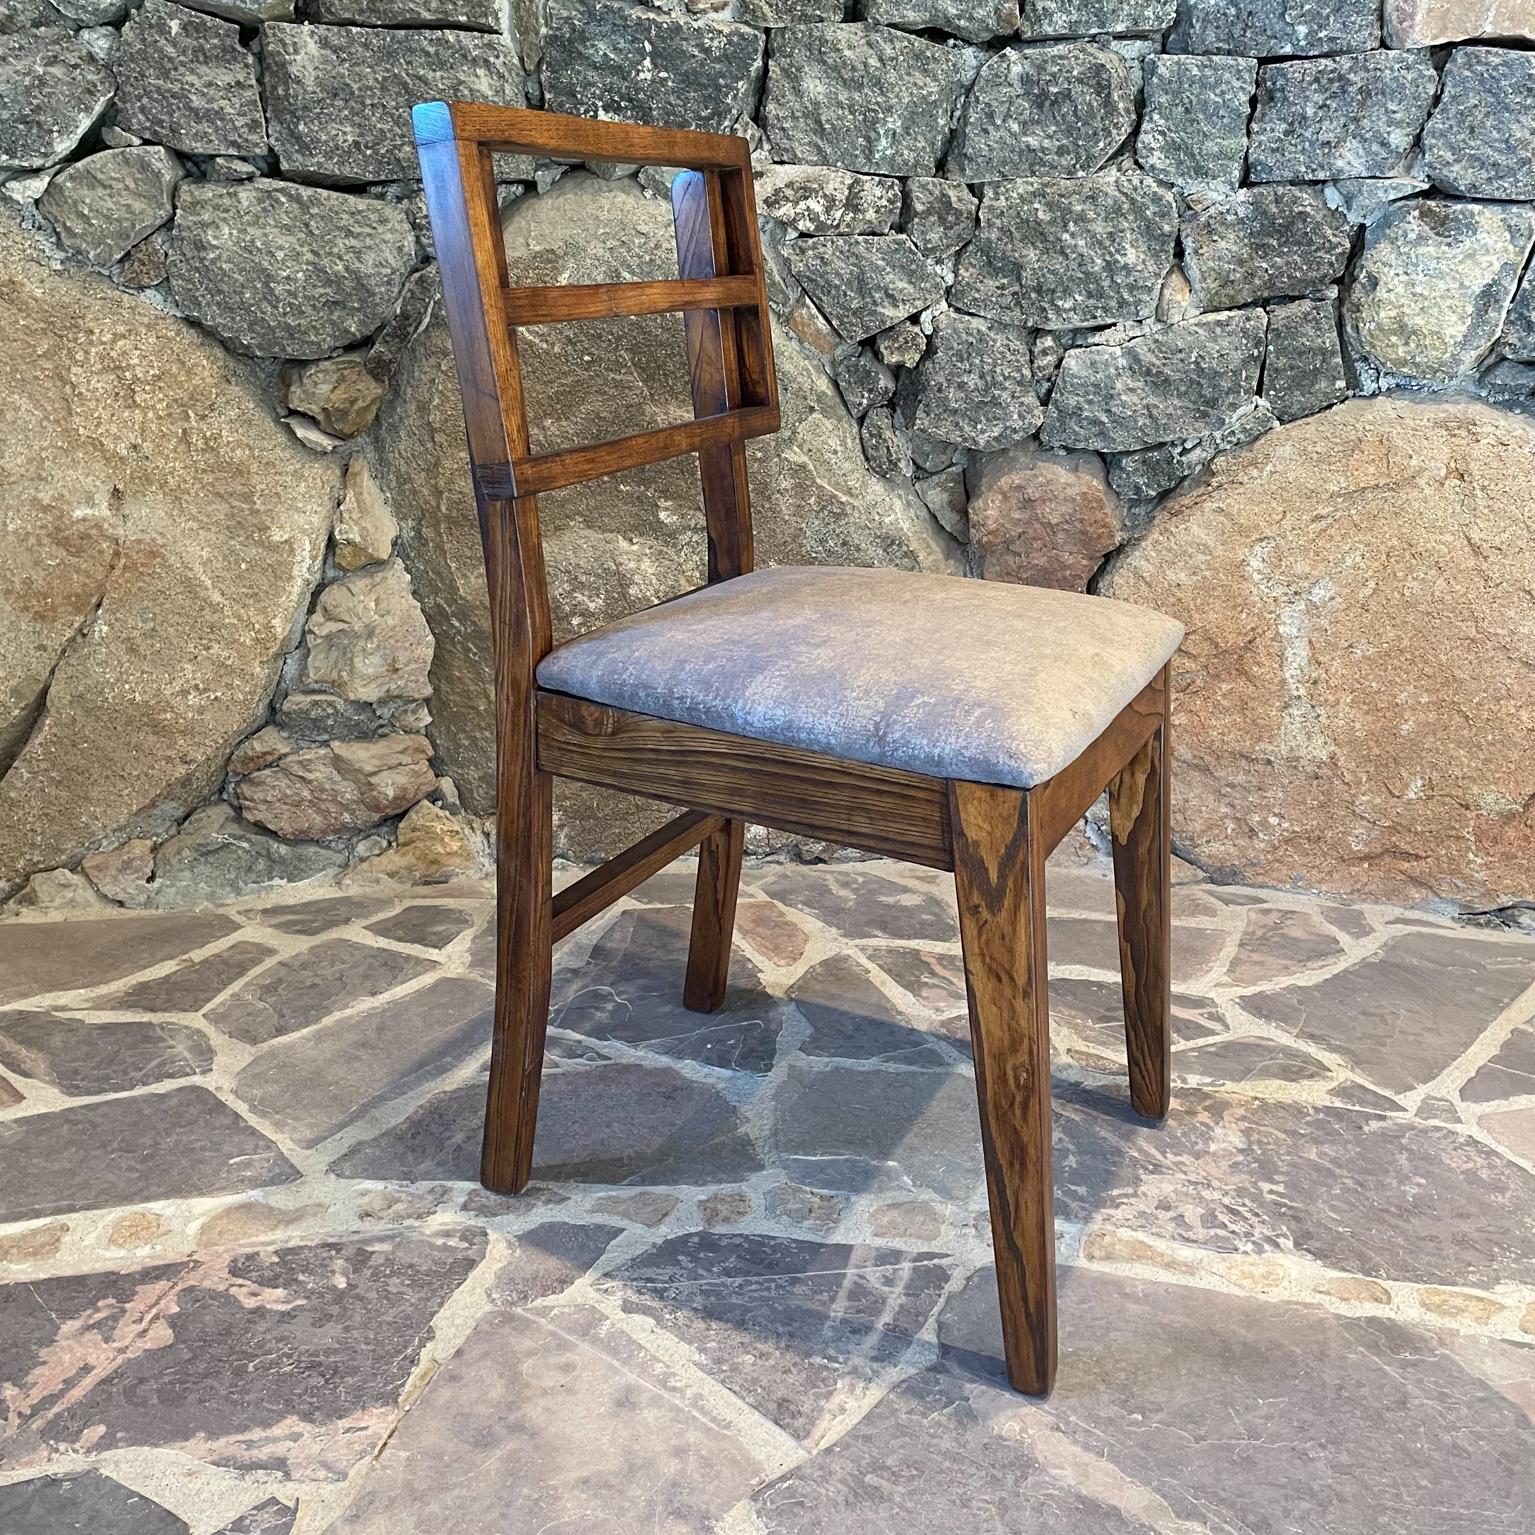 2 Modern Side Chairs in Oak, Style of Paul Laszlo Glenn of Calif 1960s Restored For Sale 2